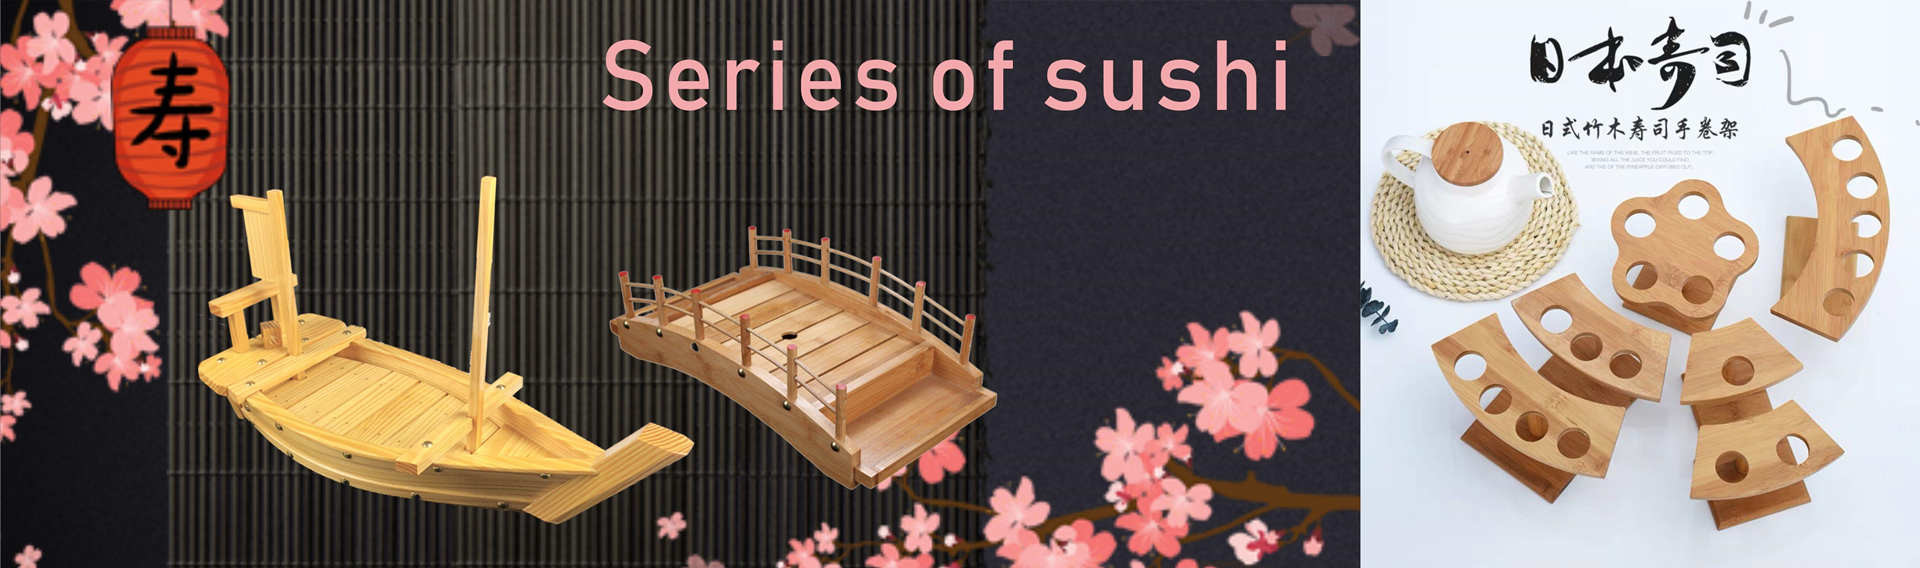 kwaliteit Het Dienblad van de sushiboot Service